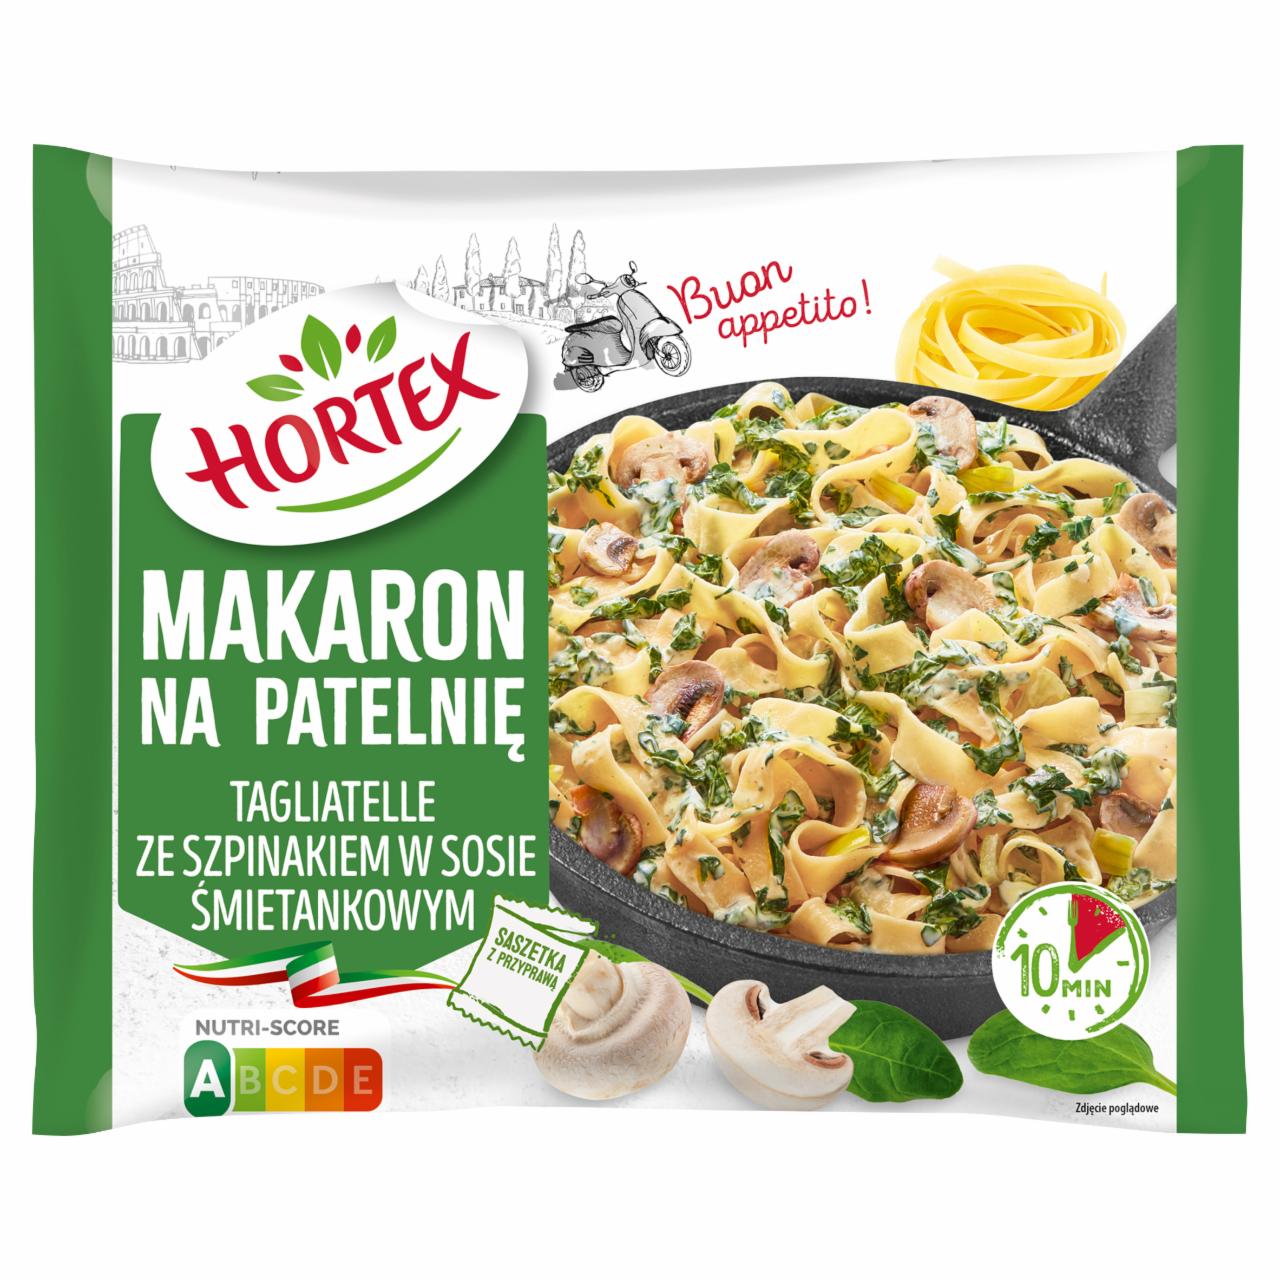 Zdjęcia - Hortex Makaron na patelnię tagliatelle ze szpinakiem w sosie śmietankowym 450 g